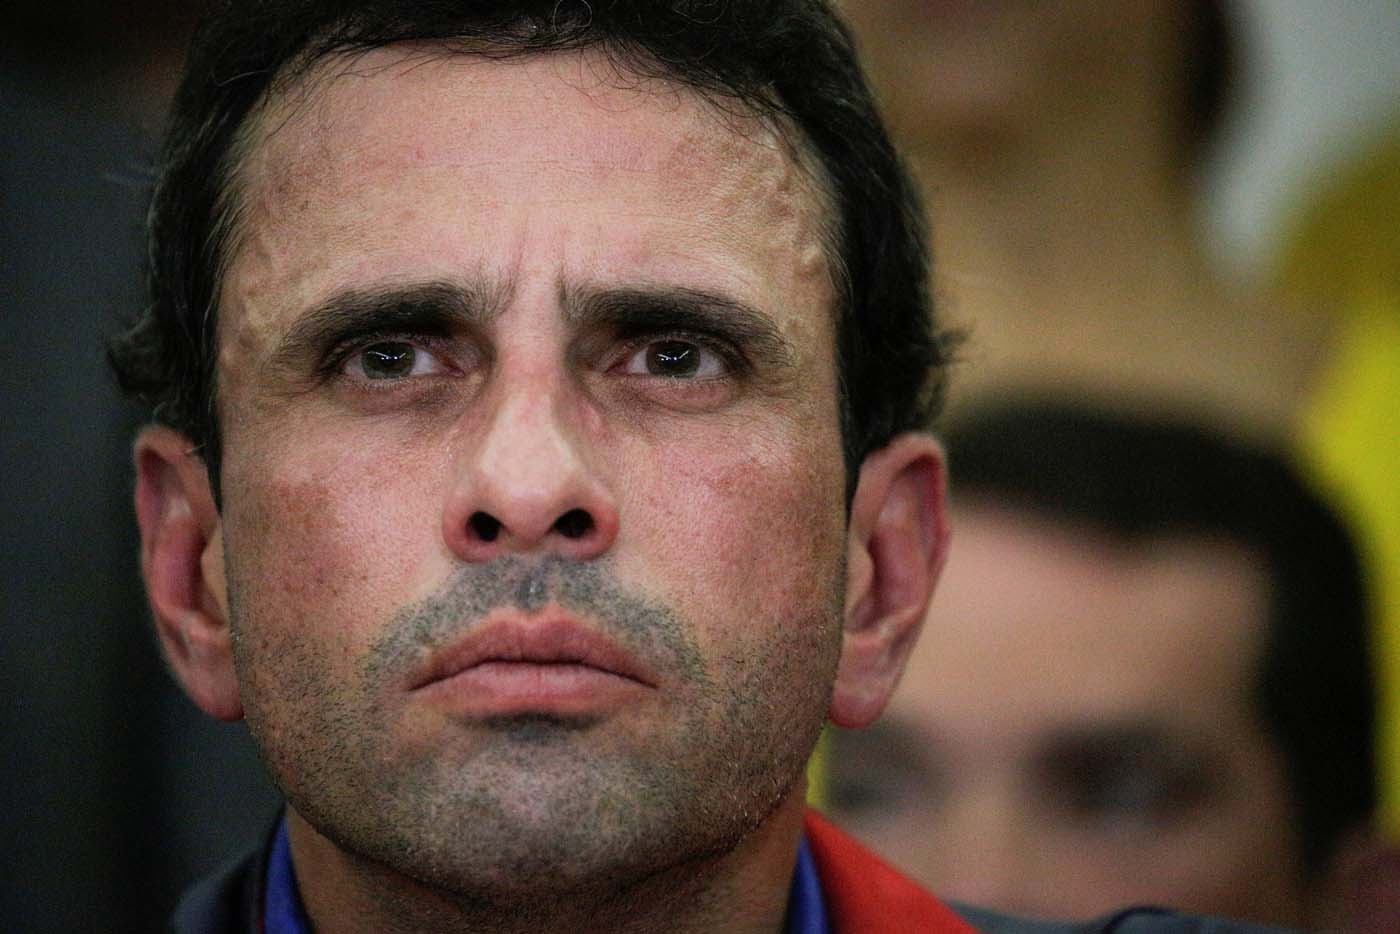 Para Capriles, Maduro se ha burlado del papa por incumplir acuerdos de diálogo